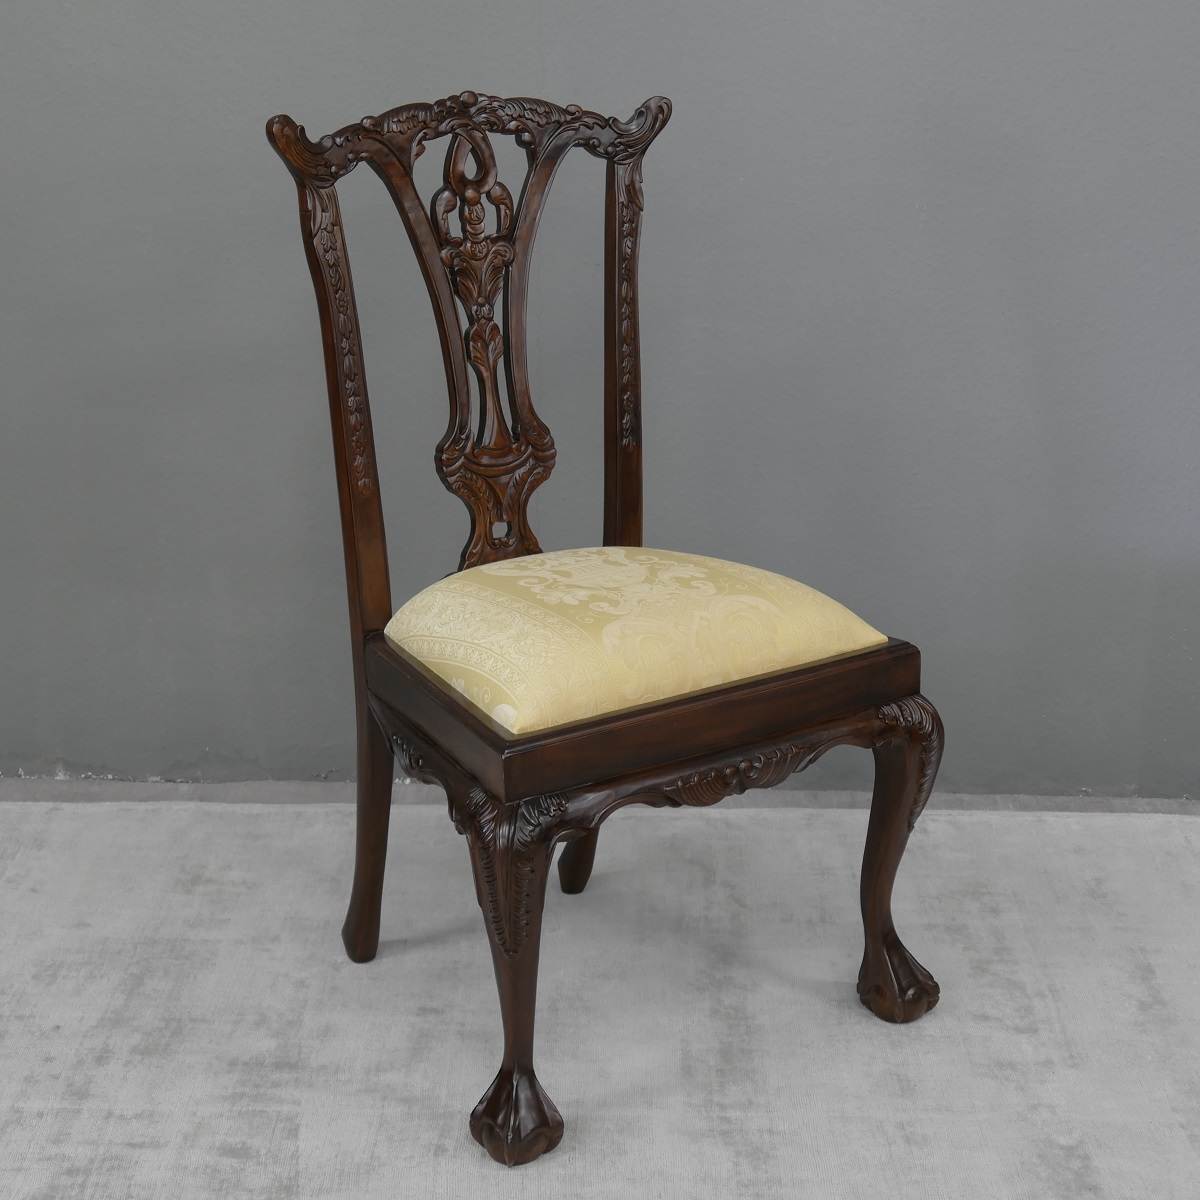 4er Stuhl Set Stühle Polsterstuhl Mahagoni brown Walnuss Bezug: BenHur 151